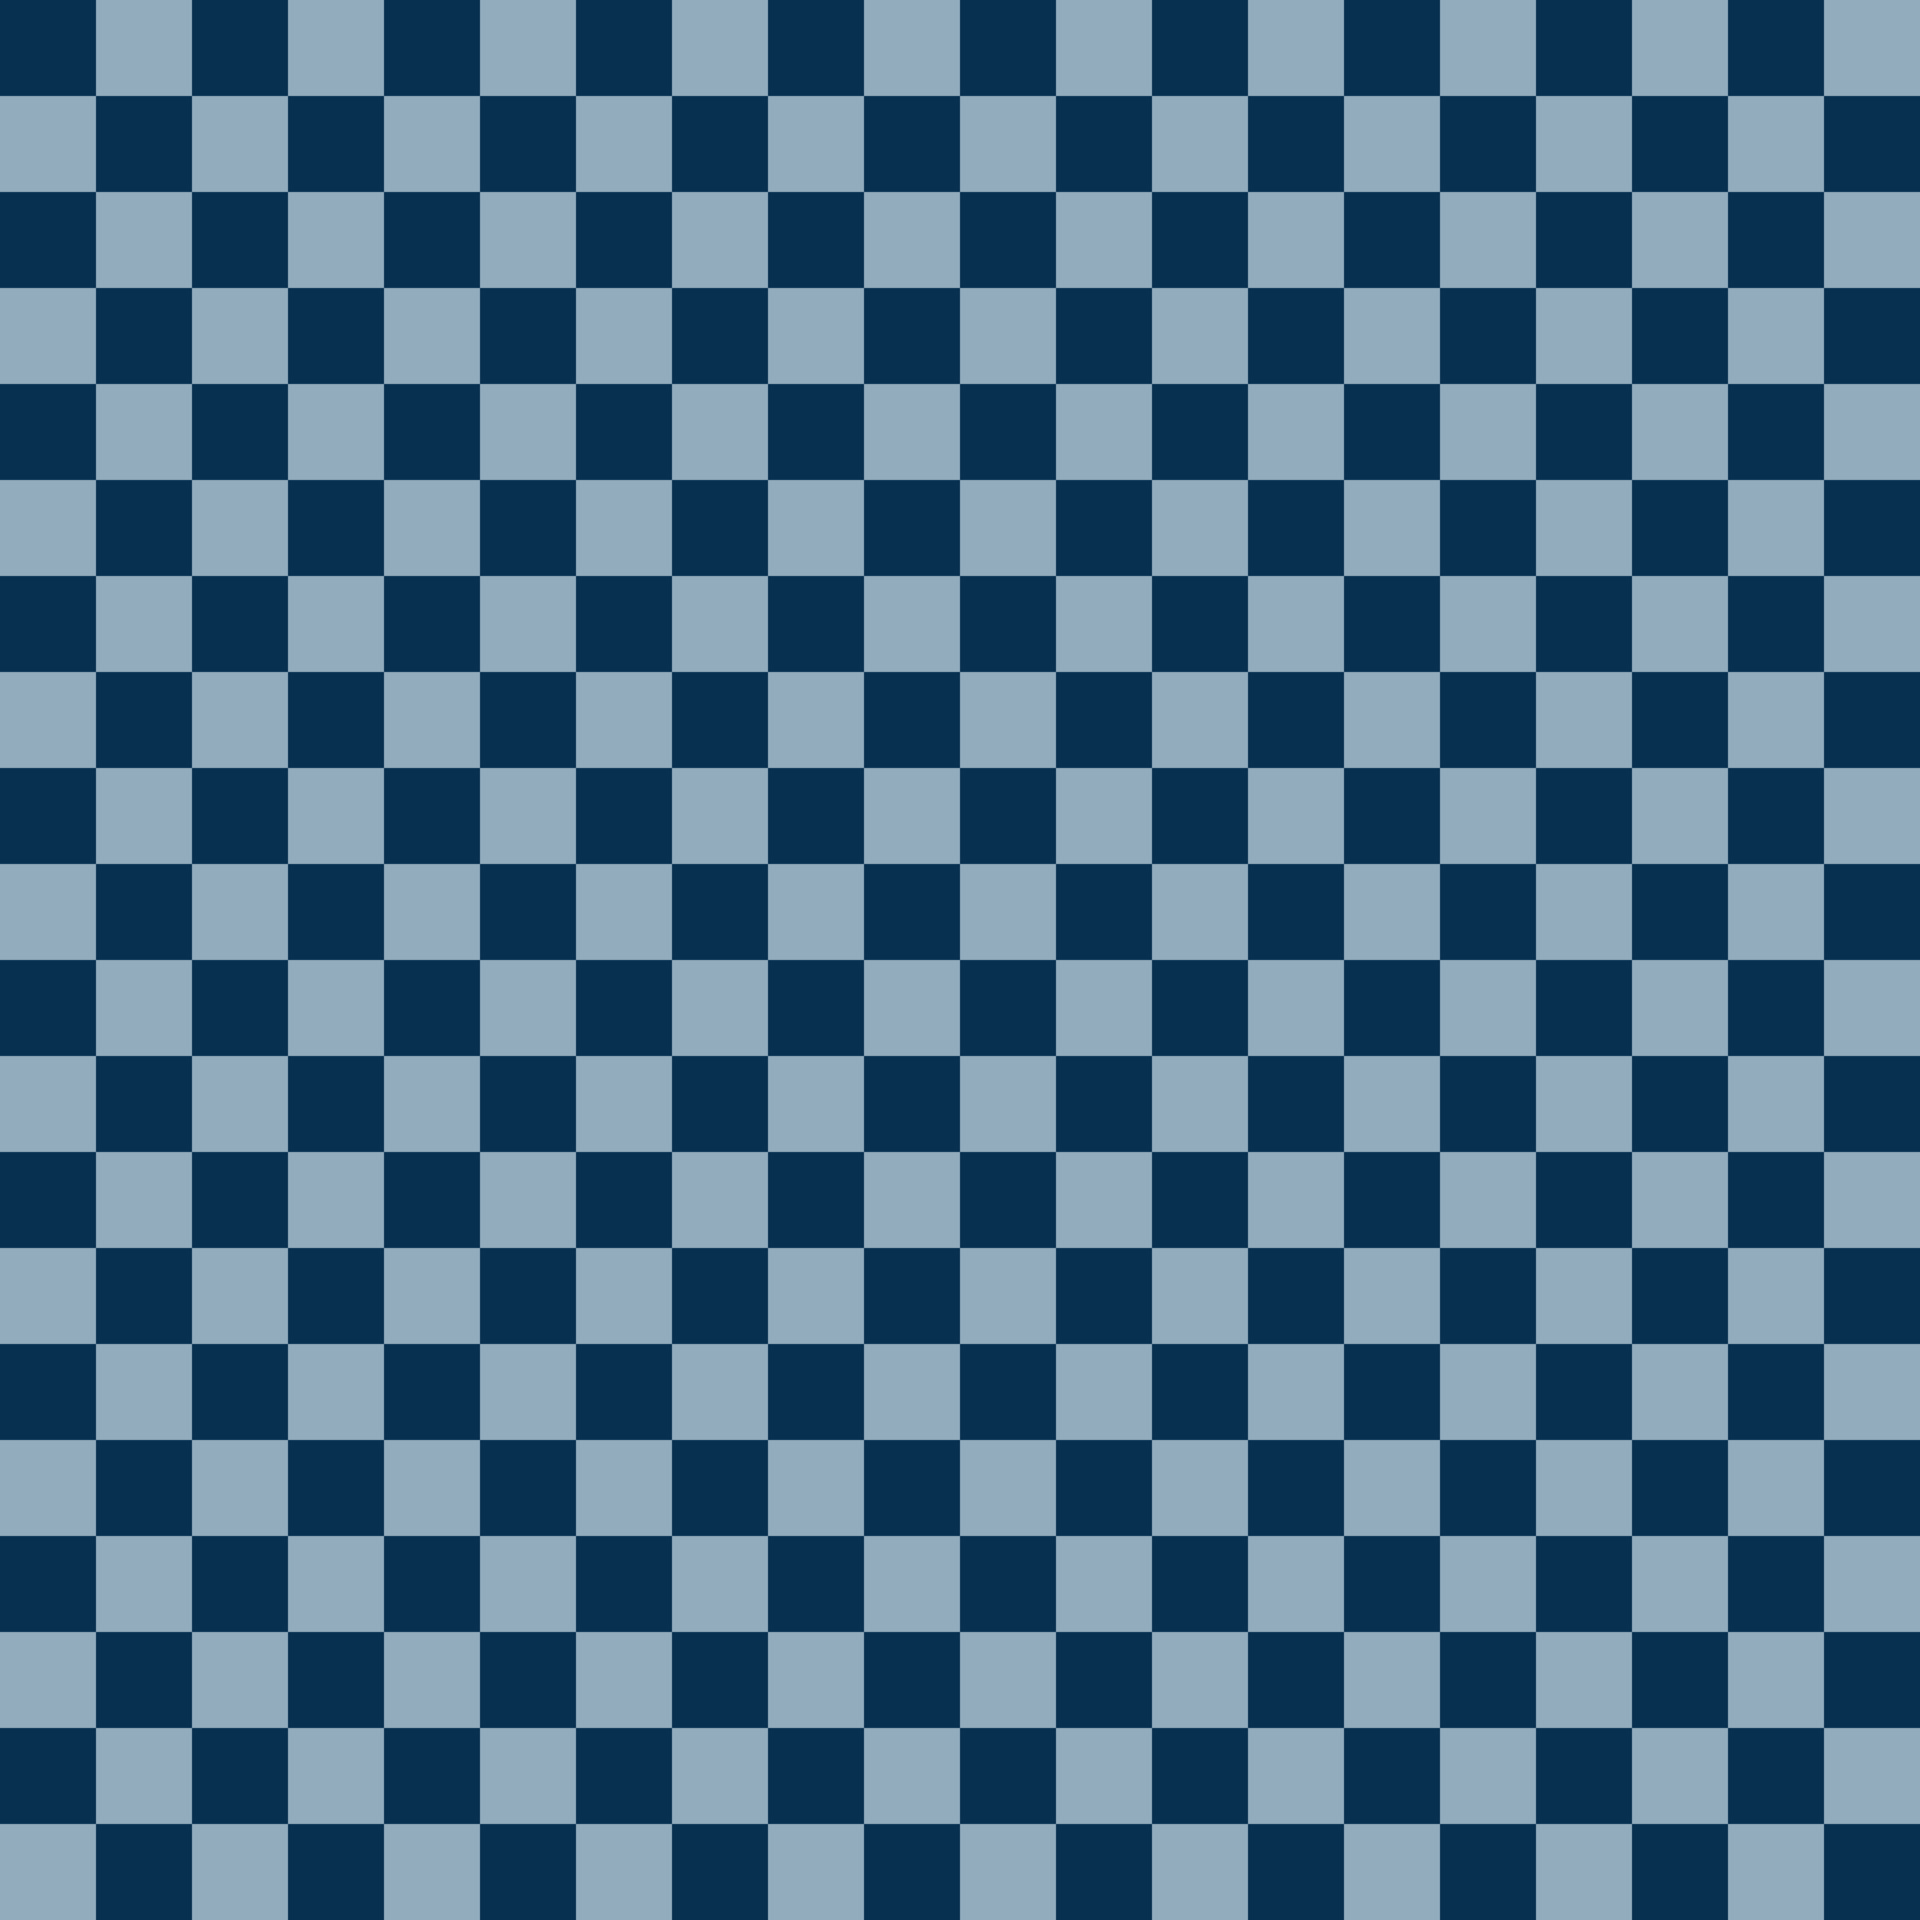 Papel de parede xadrez azul com um quadrado branco no meio